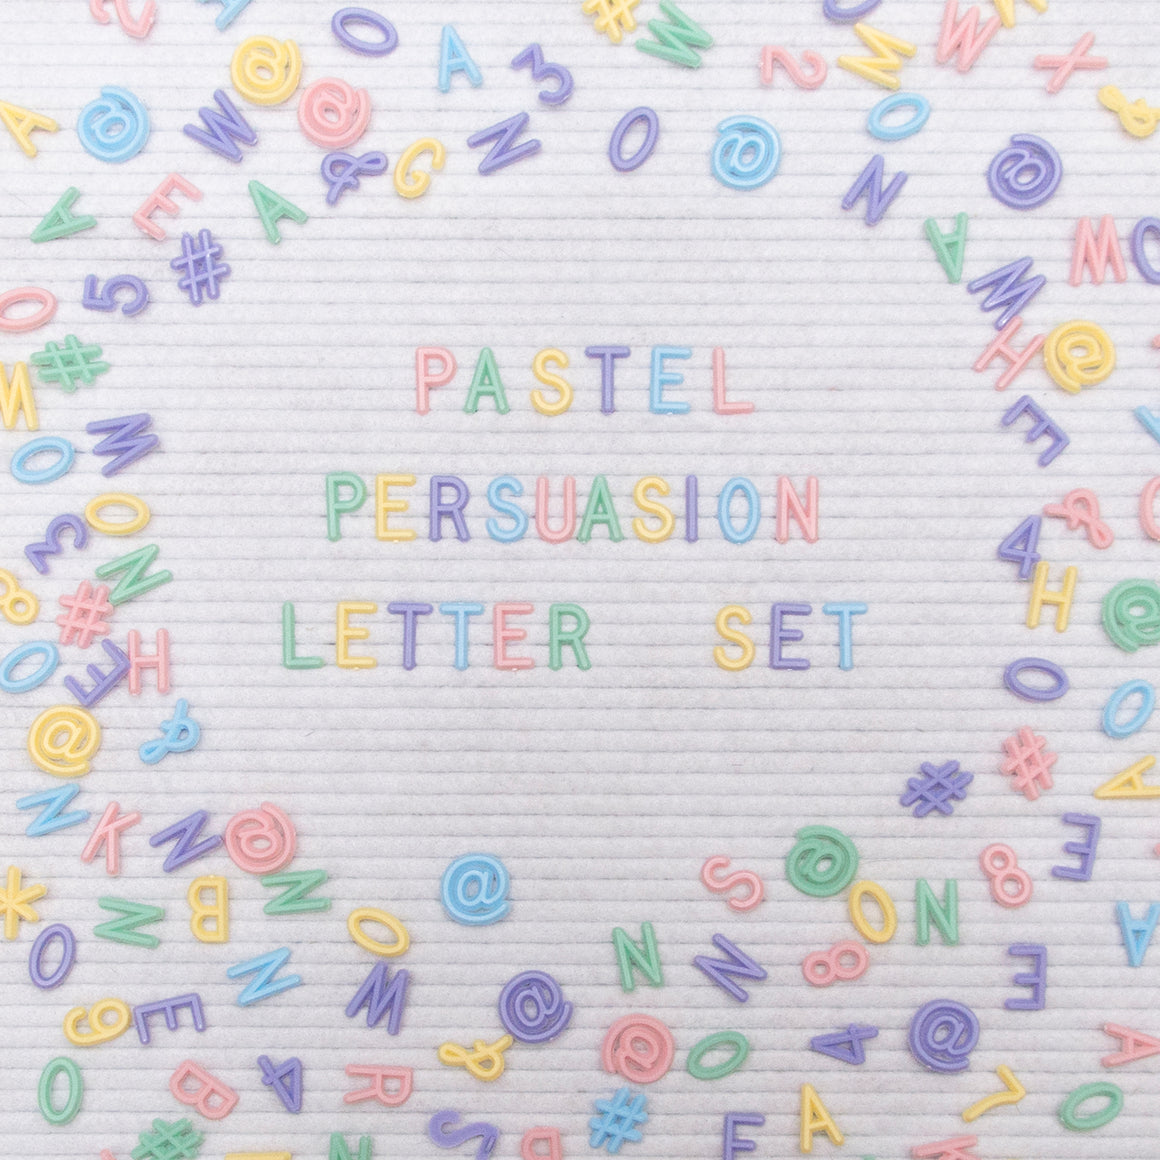 3/4" Pastel Persuasion Letter Set, 750-Piece